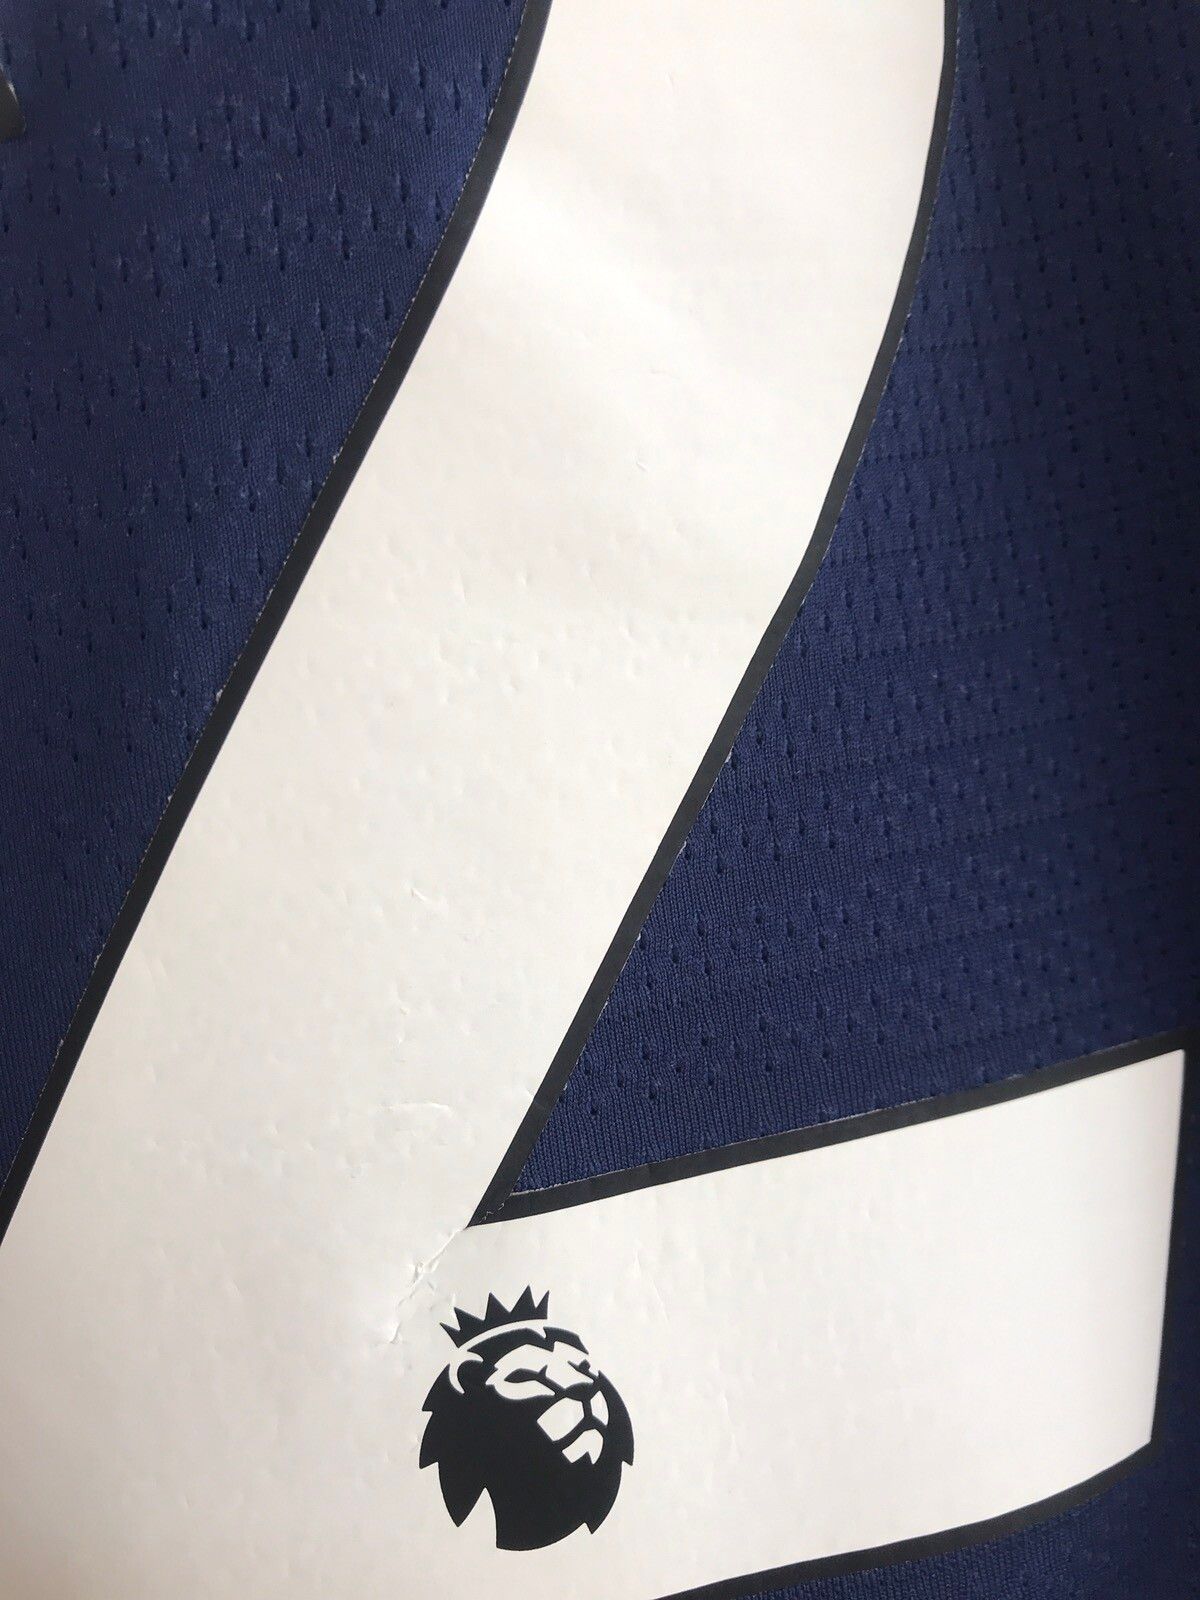 Nike Tottenham 2019-2020 Eriksen Nike Vaporknit Soccer Jersey Kit Size US L / EU 52-54 / 3 - 15 Thumbnail